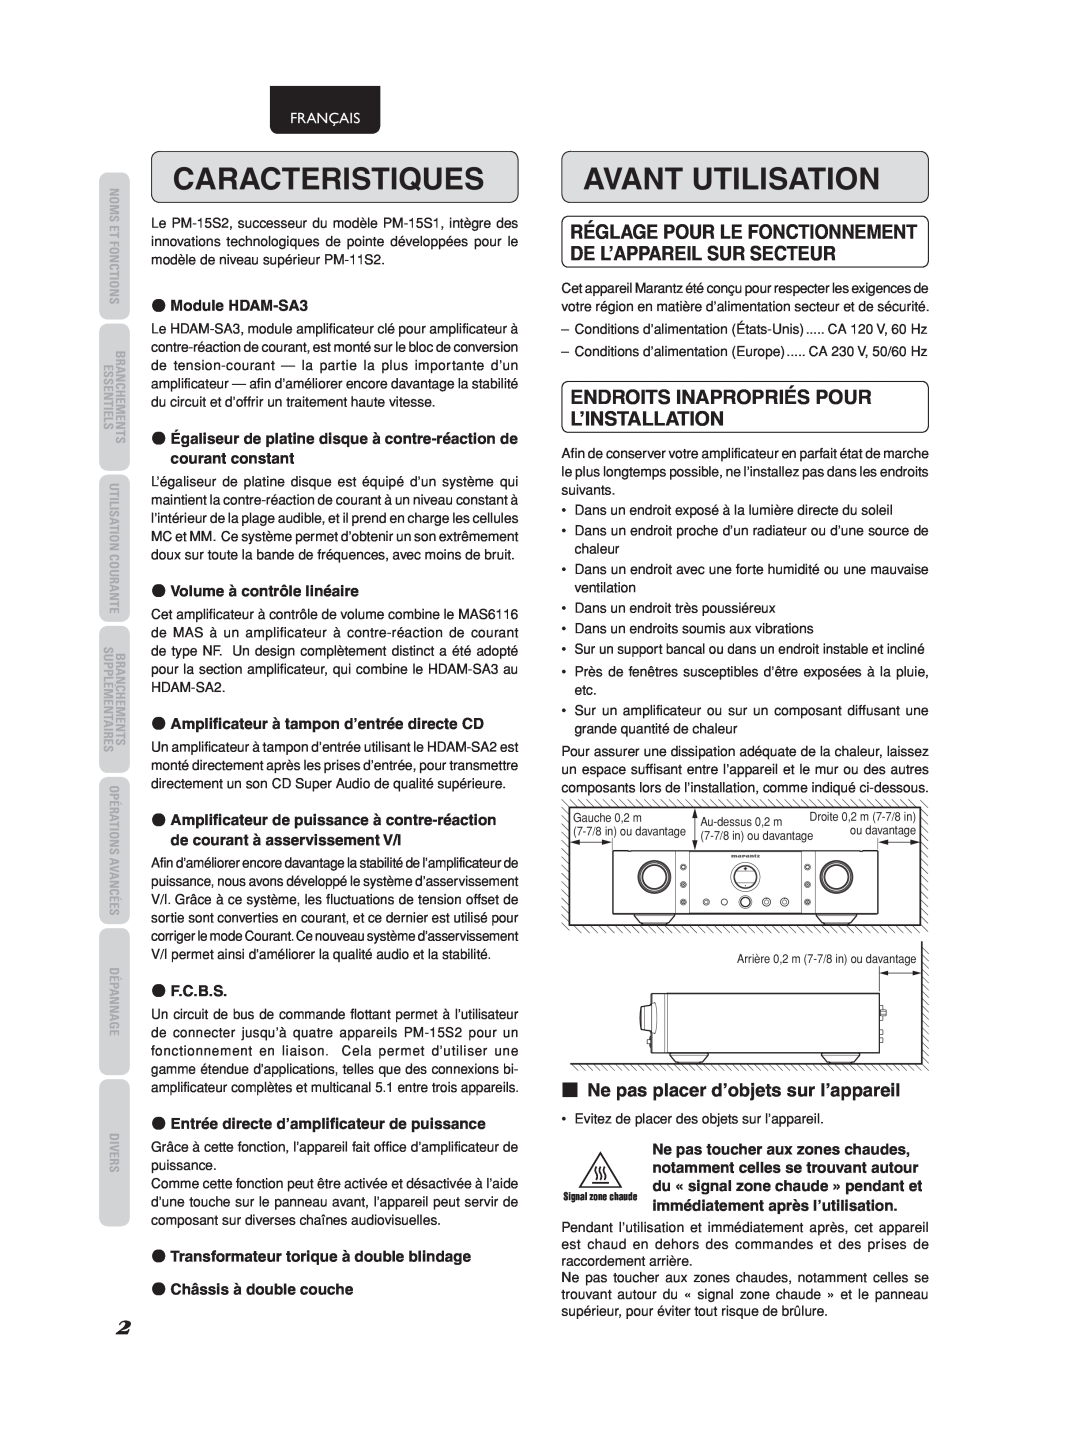 Marantz 541110275035M manual Caracteristiques, Avant Utilisation, 7Ne pas placer d’objets sur l’appareil, Français 